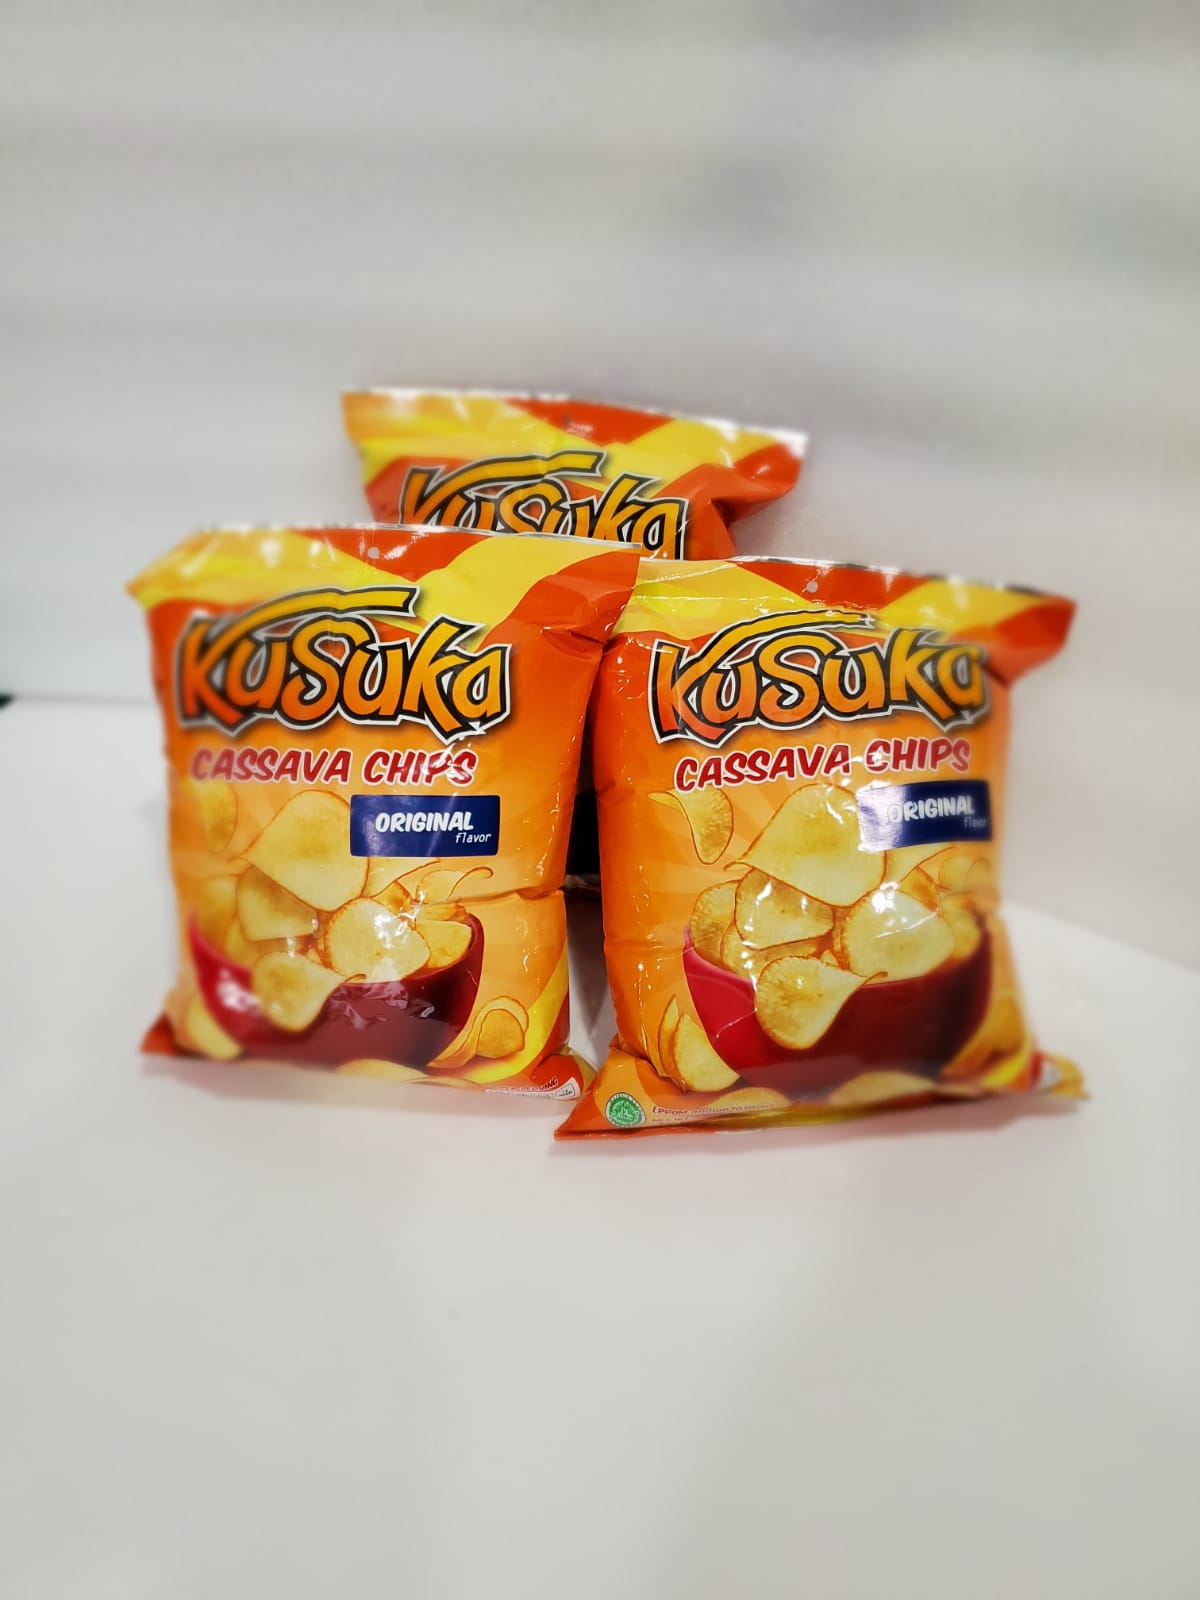 Kusuka Cassava Chips Original